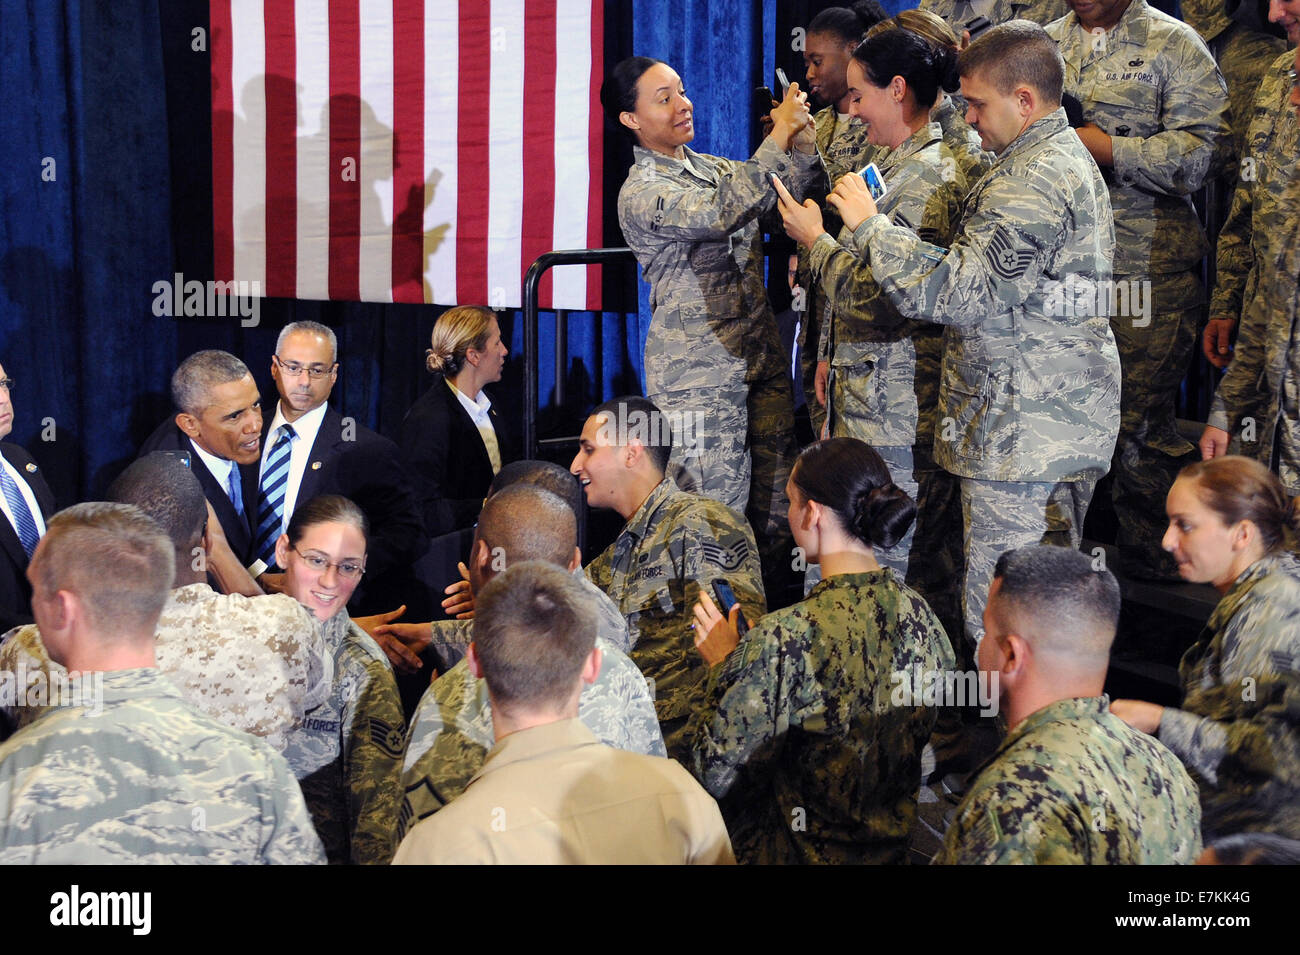 Le président américain Barack Obama salue les membres de service avant d'aborder les troupes lors d'une visite à l'U.S. Central Command à la base aérienne MacDill, 17 septembre 2014 à Tampa, en Floride. Banque D'Images